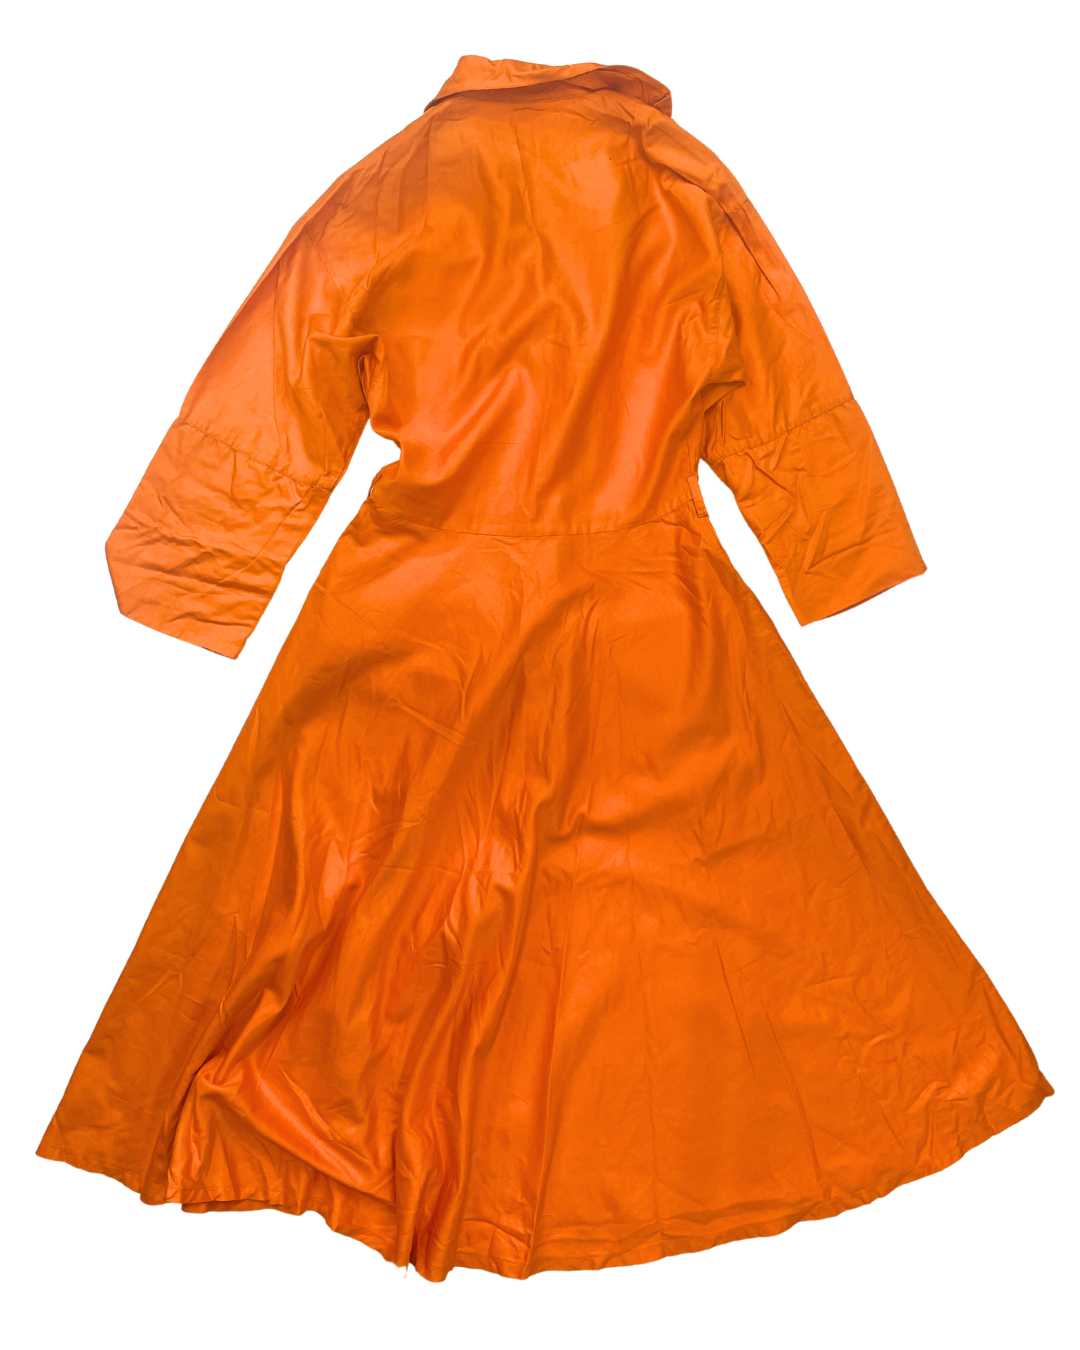 Harrods Orange Button Dress